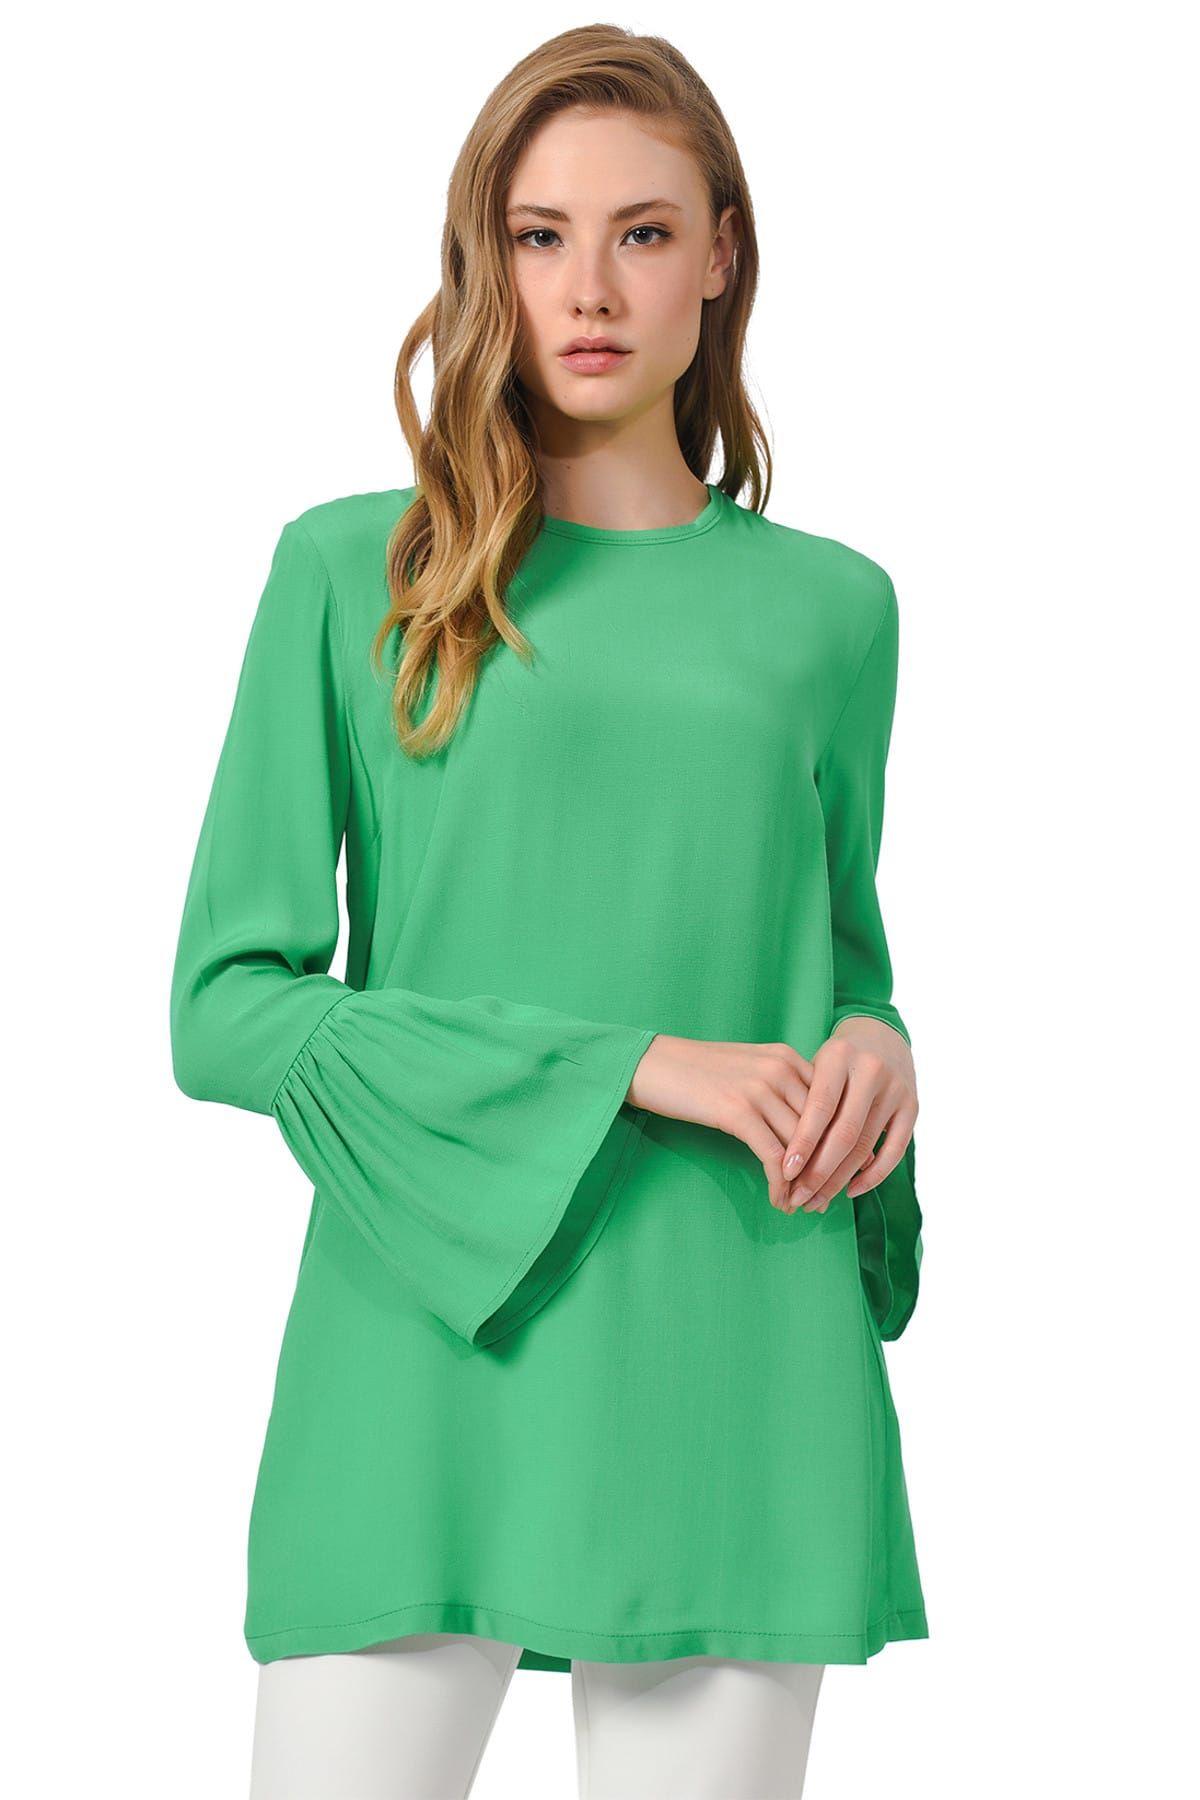 Mizalle Kadın Yeşil Basic Kolları Volanlı Bluz 19YGMZL1012015